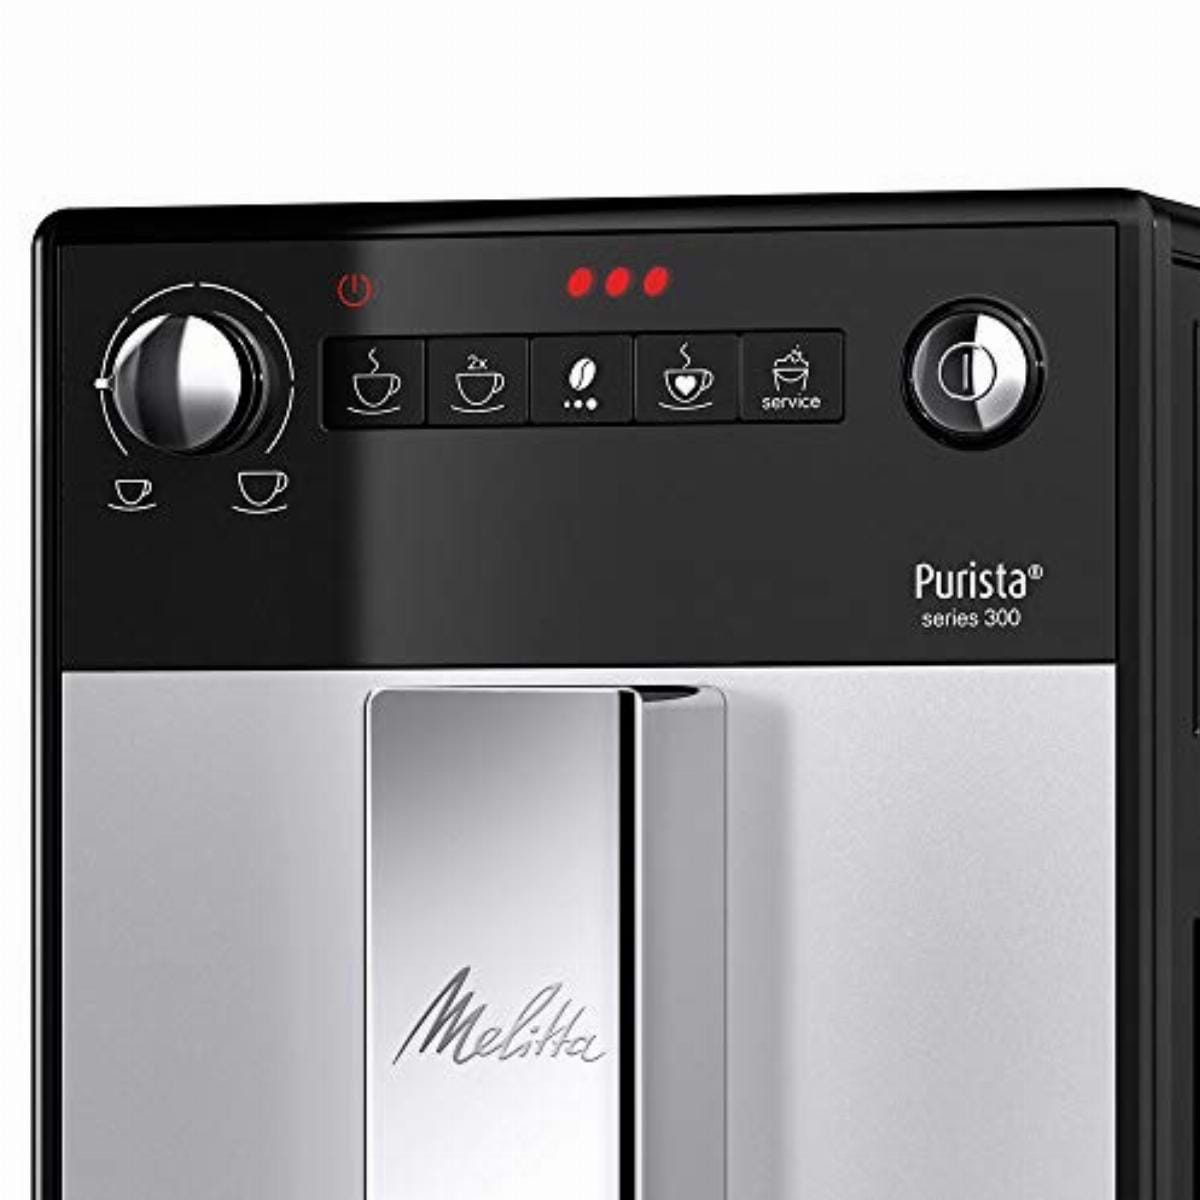 מכונת קפה טוחנת מליטה פיוריטצה Melitta Puritsa Silver